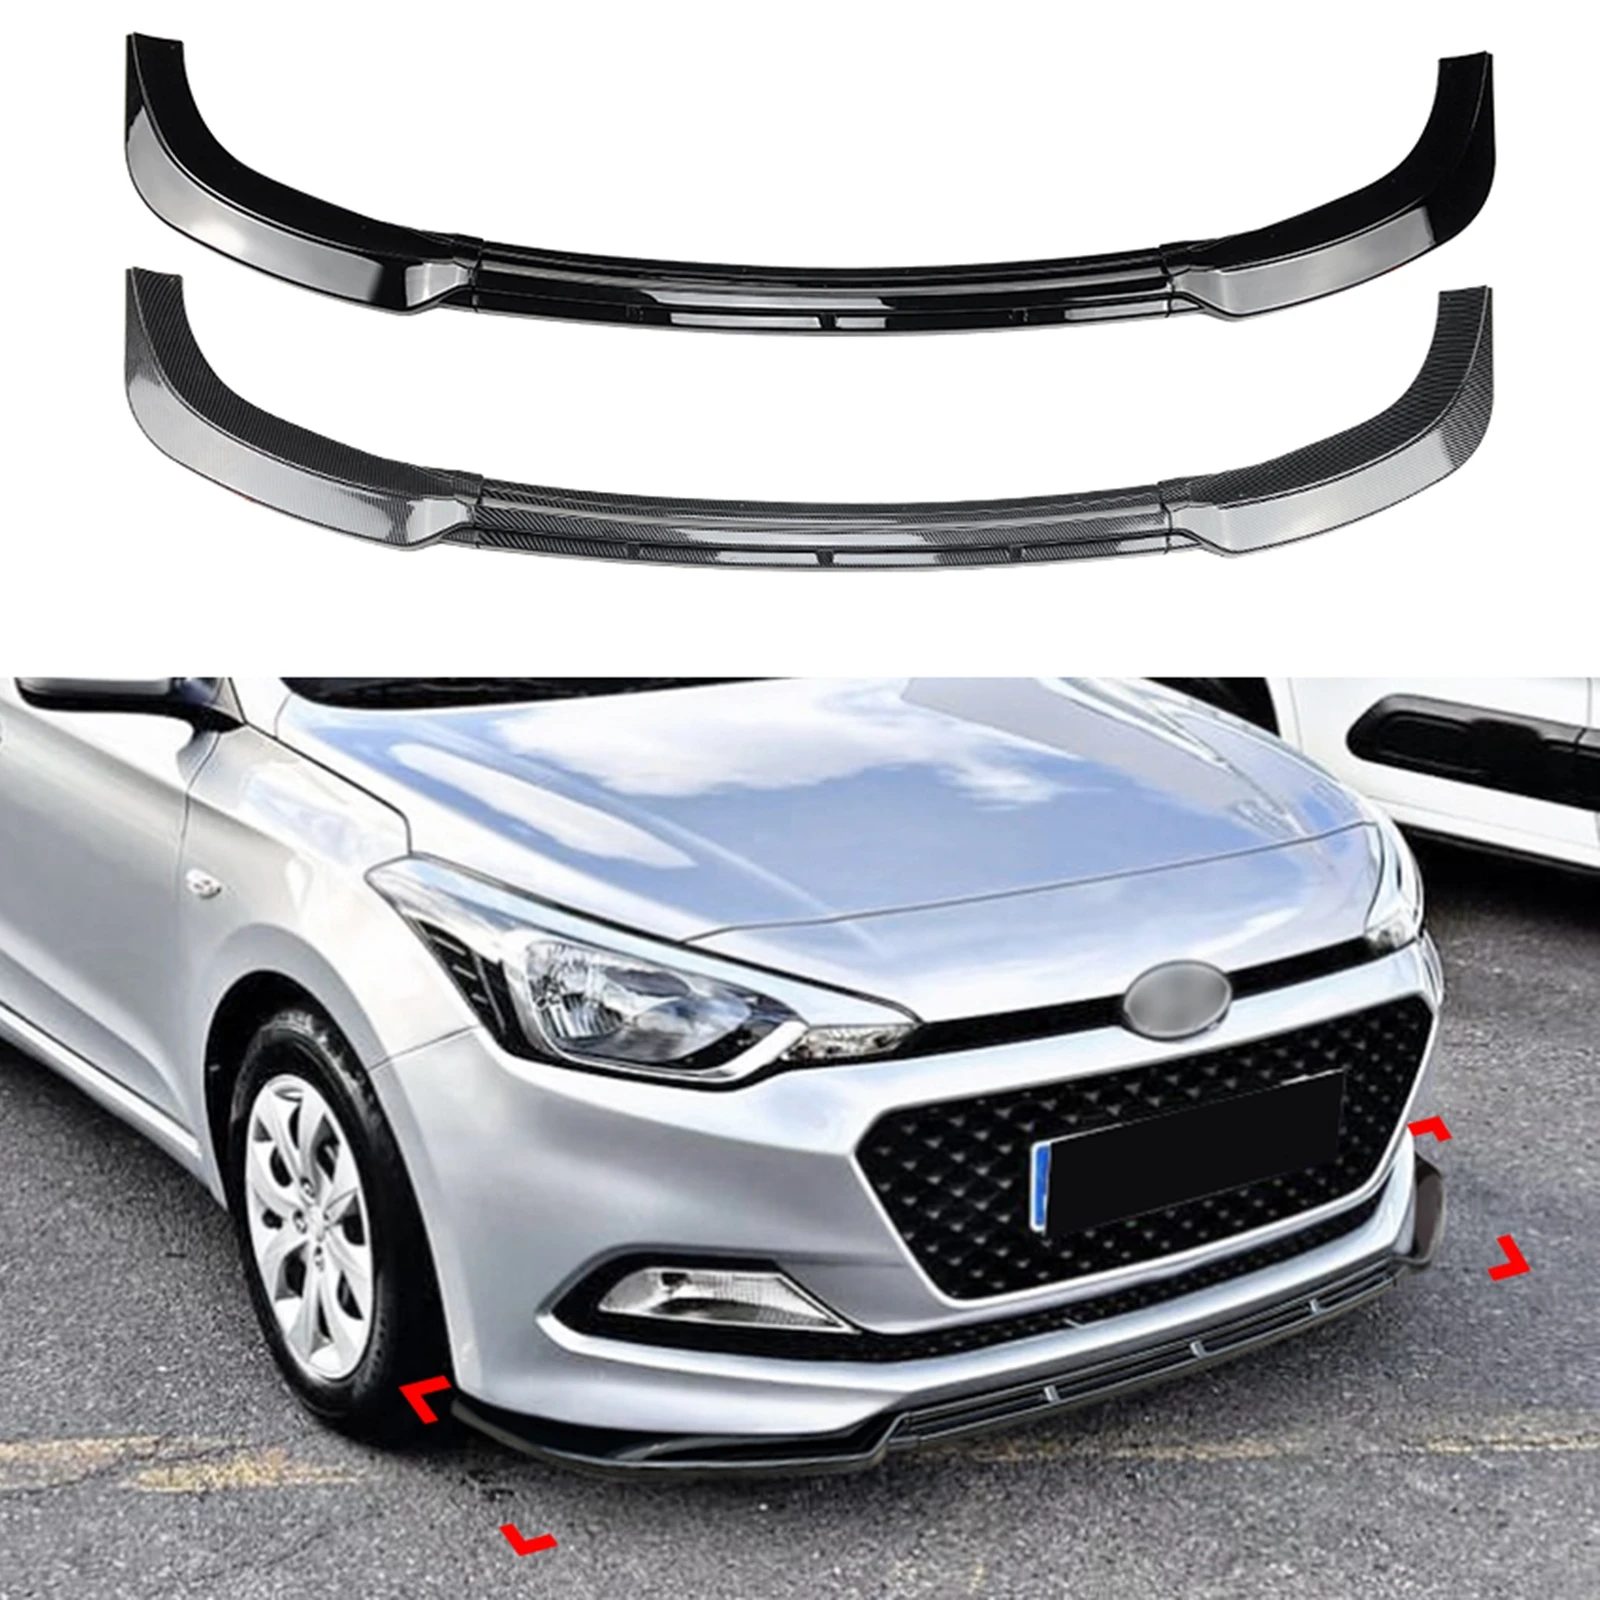 

Front Bumper Spoiler Lip Car Body Kit Lower Splitter Guard Plate For Hyundai I20 MK2 Pre-facelift 2015 2016 2017